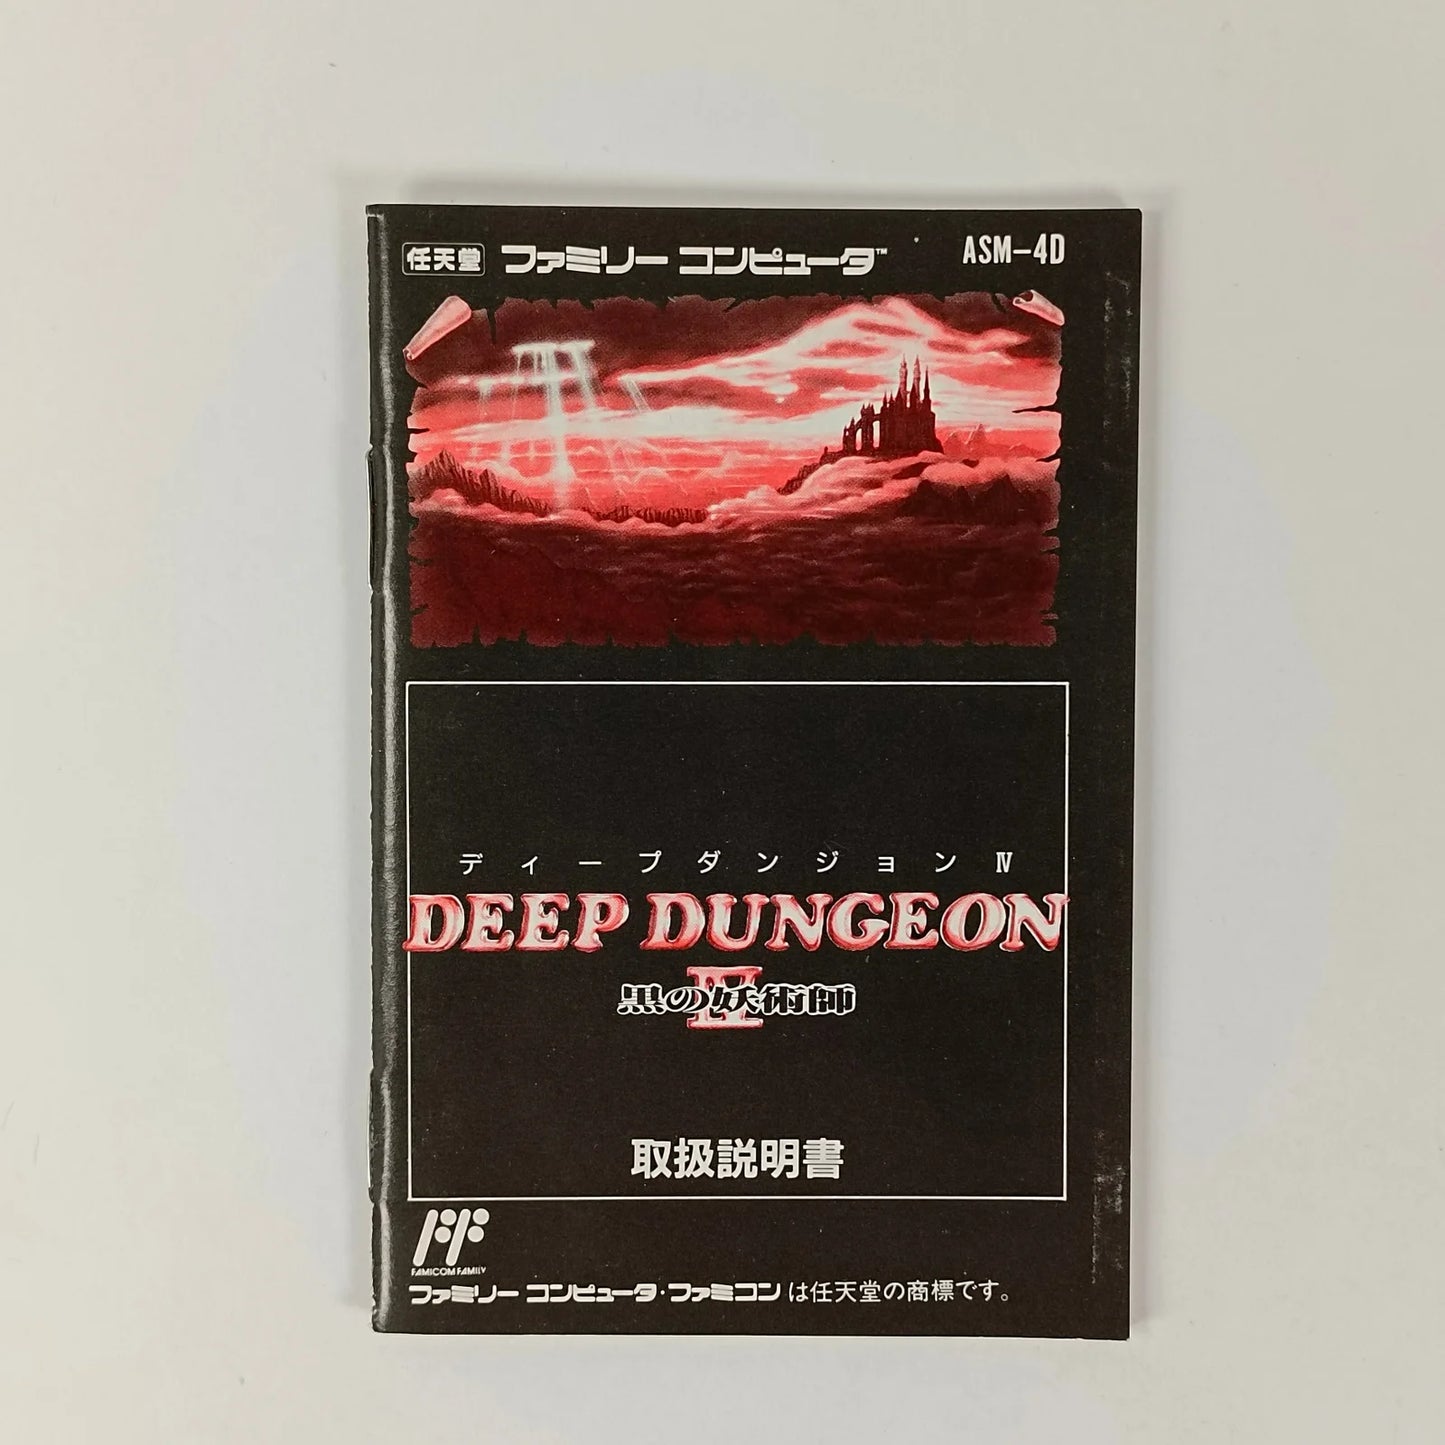 Deep Dungeon IV: The Black Sorcerer